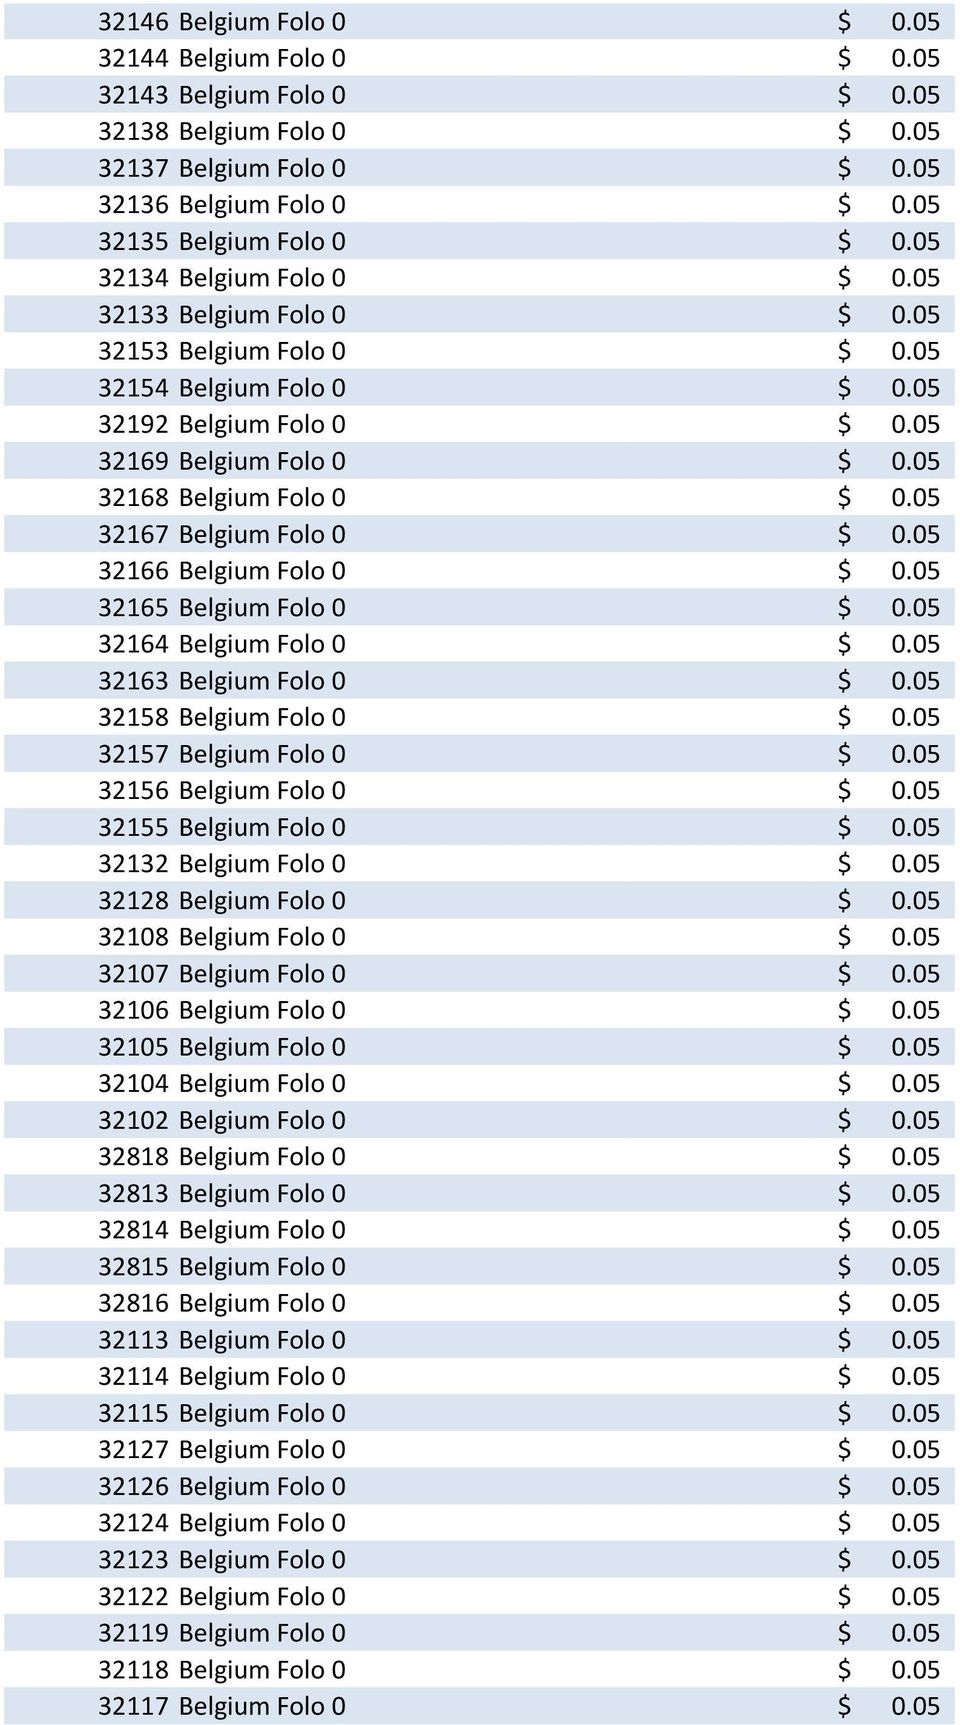 05 32167 Belgium Folo 0 $ 0.05 32166 Belgium Folo 0 $ 0.05 32165 Belgium Folo 0 $ 0.05 32164 Belgium Folo 0 $ 0.05 32163 Belgium Folo 0 $ 0.05 32158 Belgium Folo 0 $ 0.05 32157 Belgium Folo 0 $ 0.